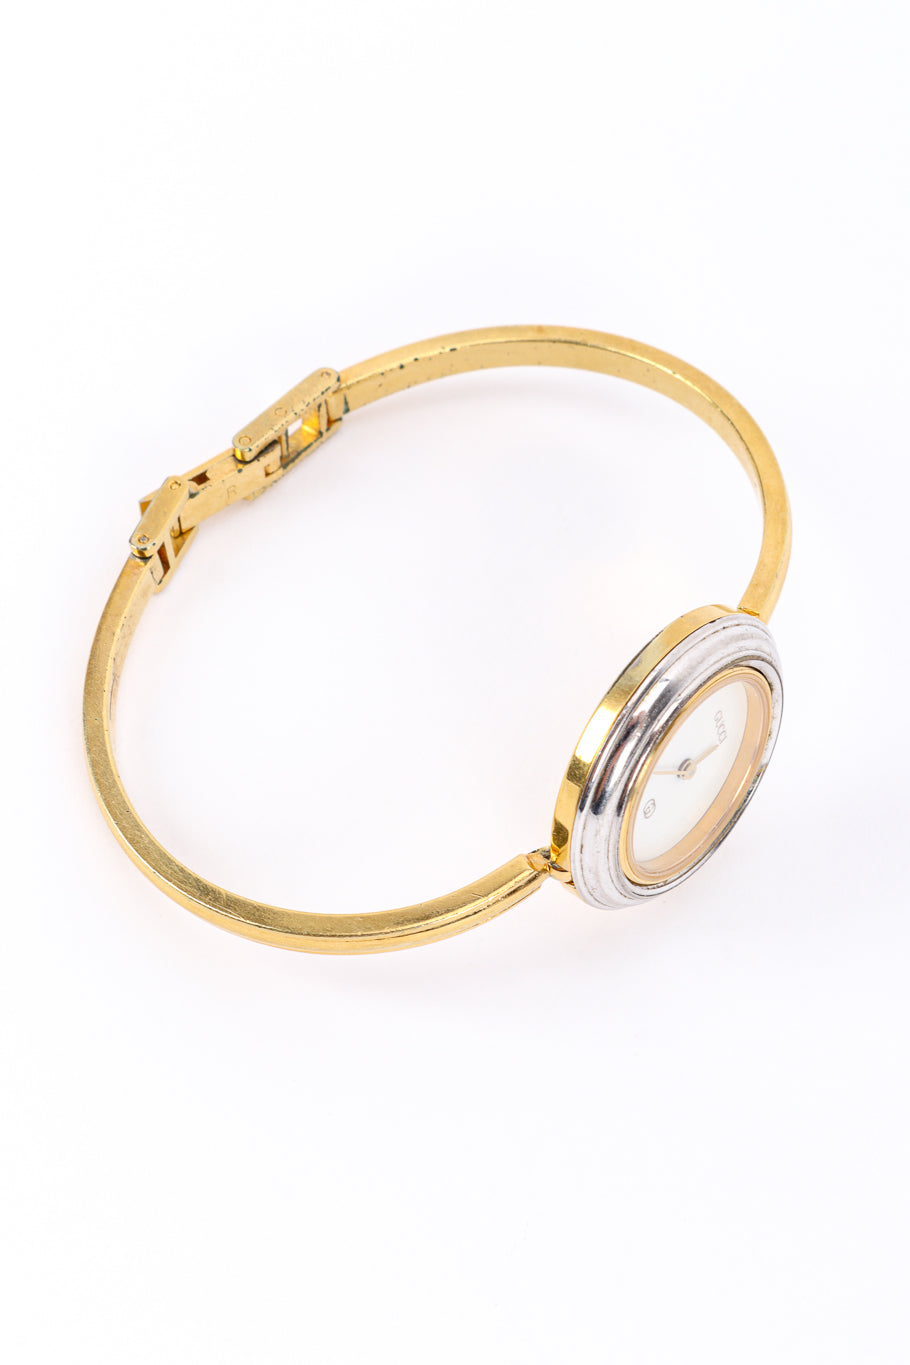 6 Bezel Bracelet Watch Boxed Set by Gucci on side @recessla